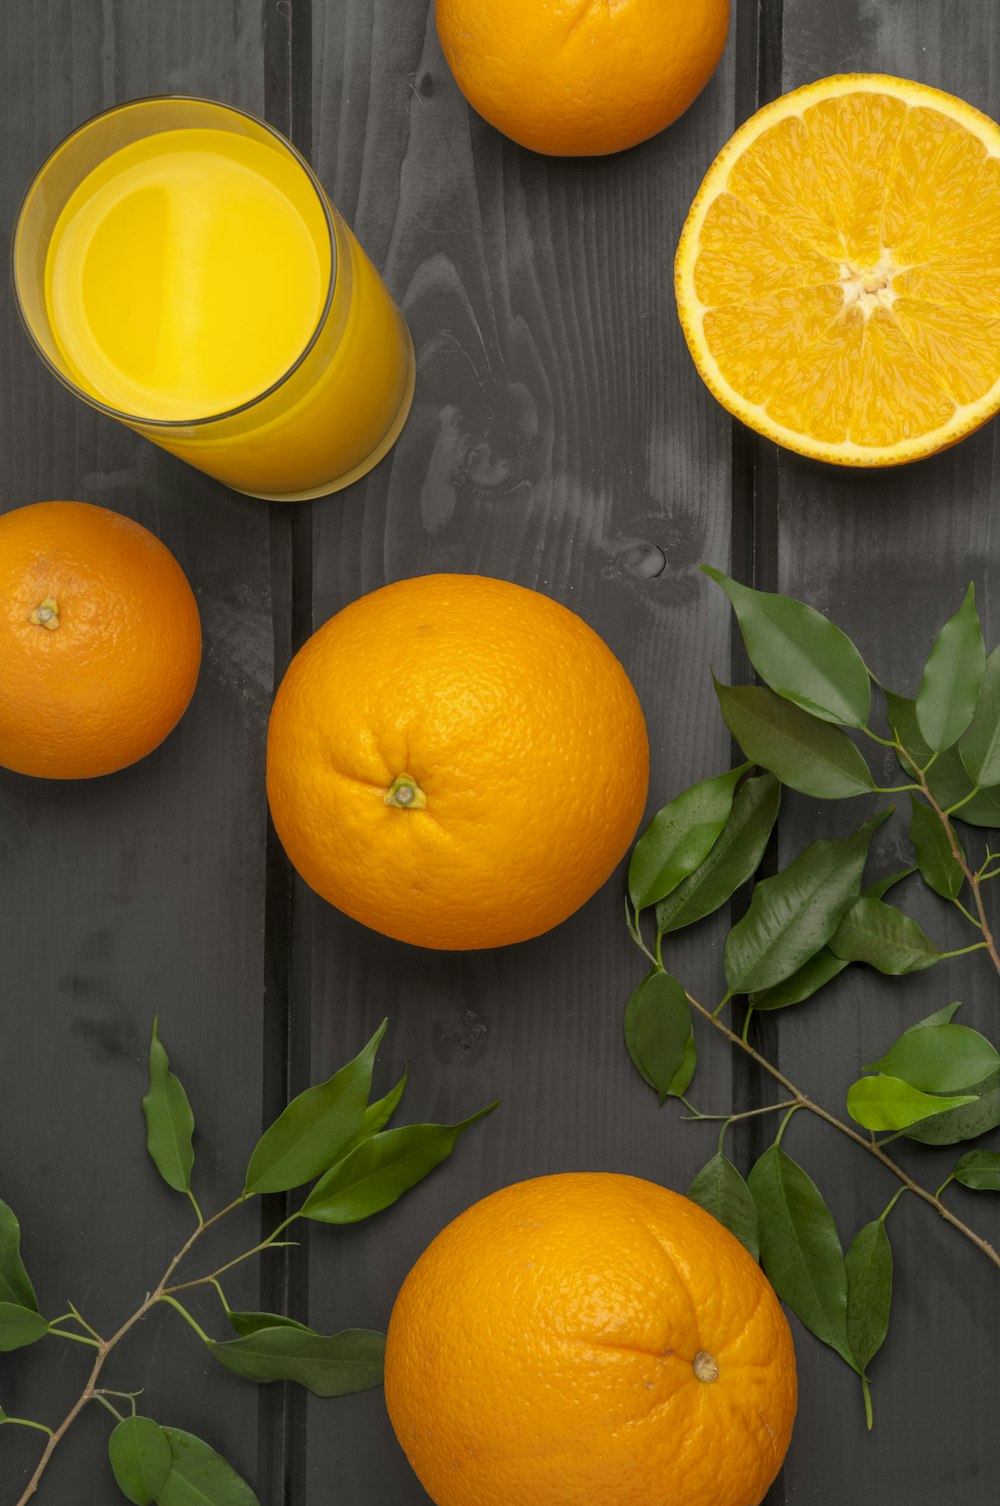 オレンジ柑橘系の果物とジュース